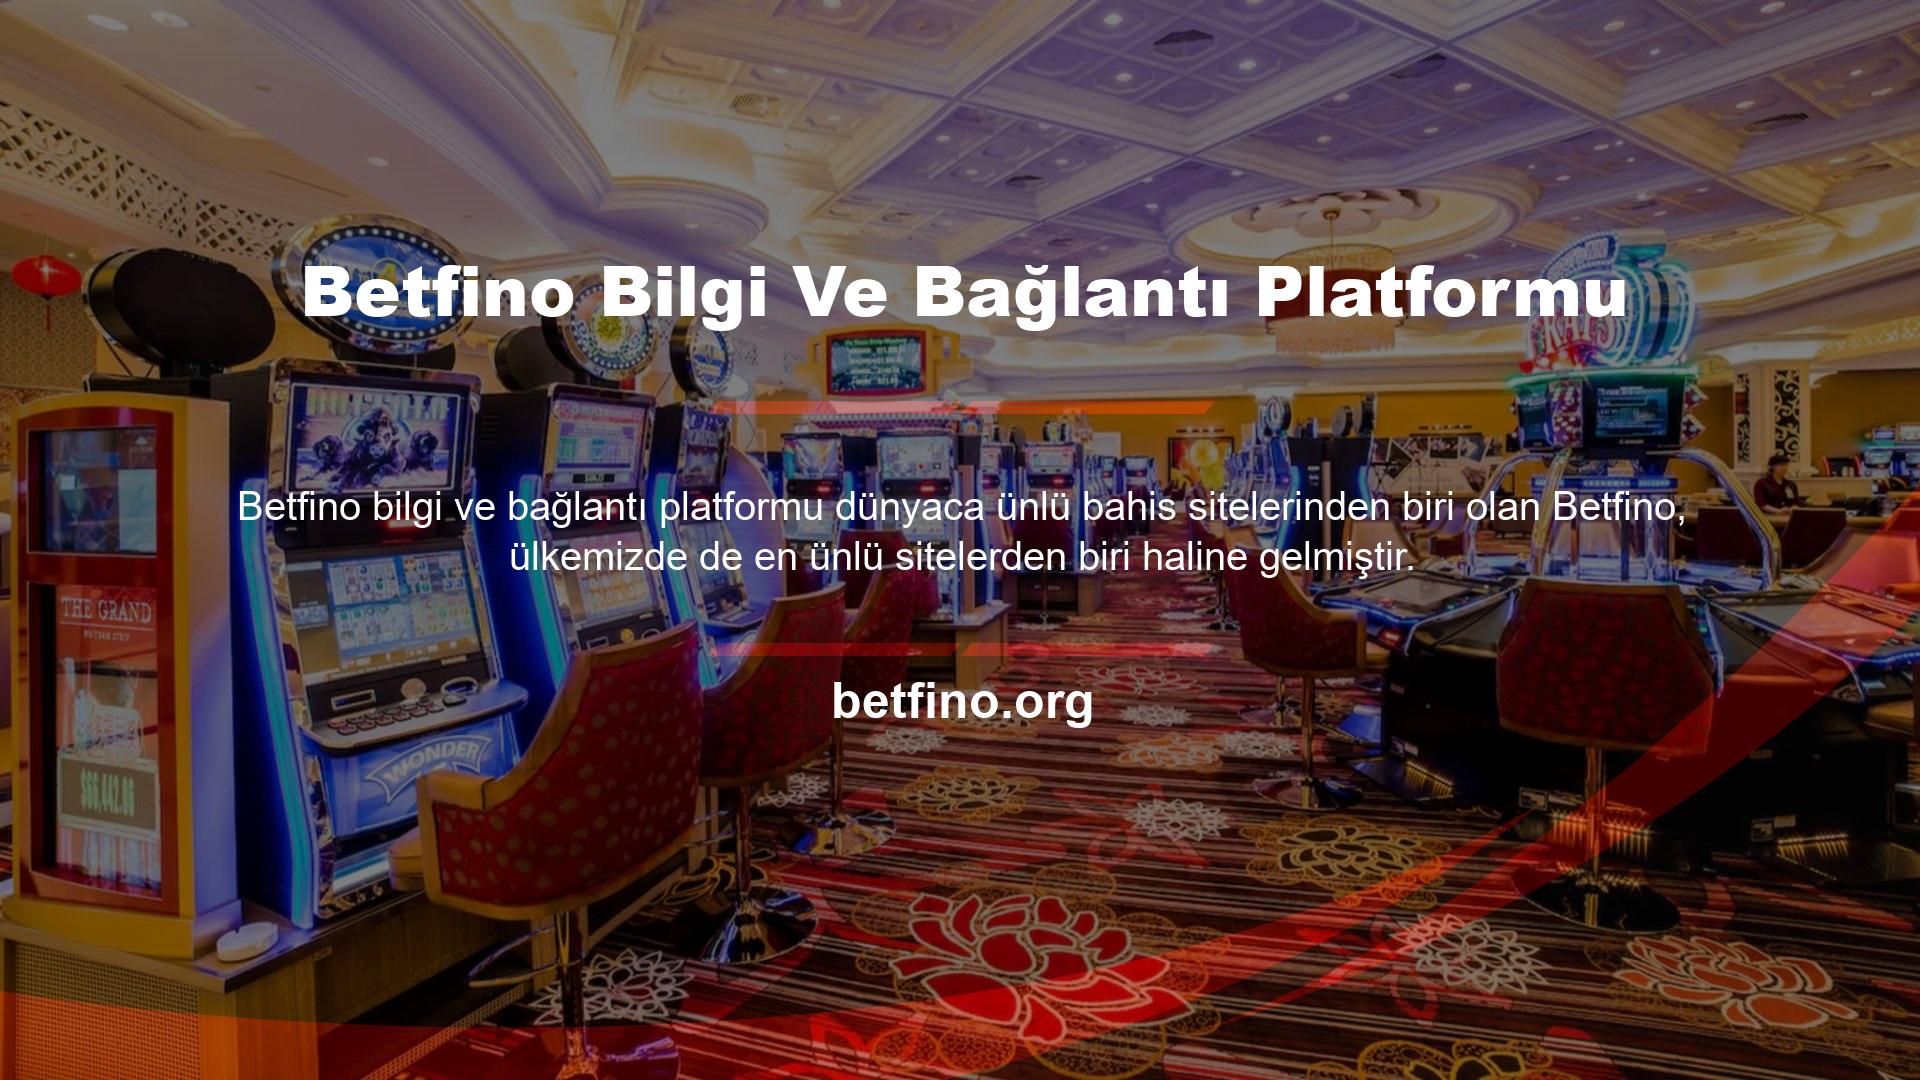 Türk canlı bahis sektörünün en büyük sitelerinden biri olan Betfino Türkiye'nin Destek Platformu olarak bu sayfada tüm konular hakkında bilgi veriyoruz